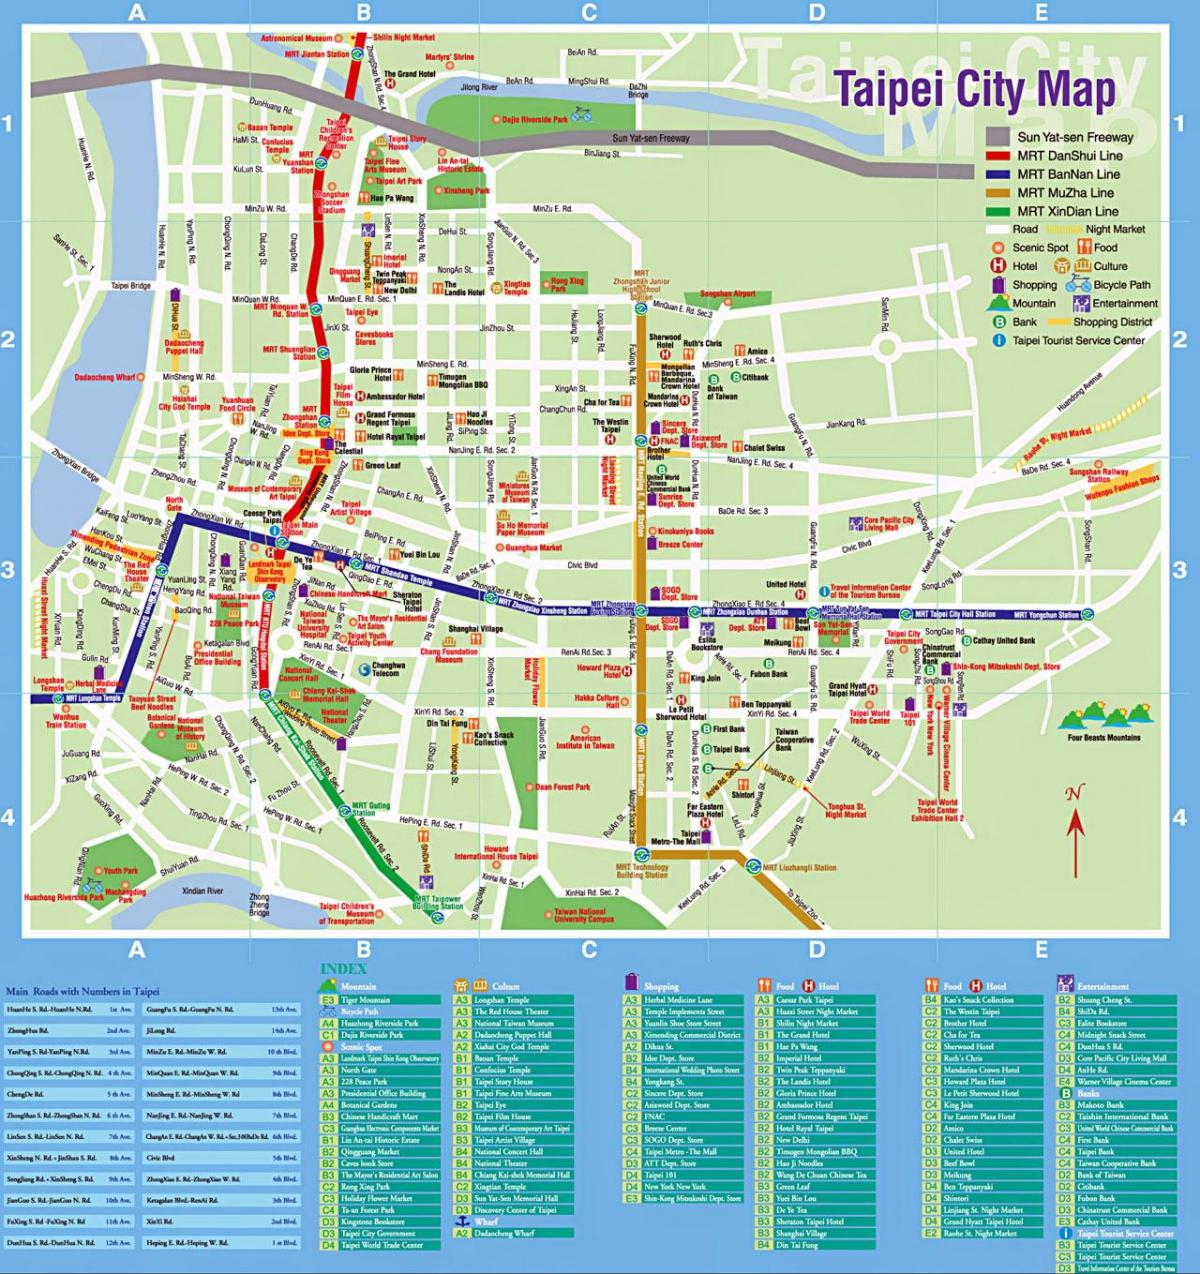 térkép Taipei city turisztikai